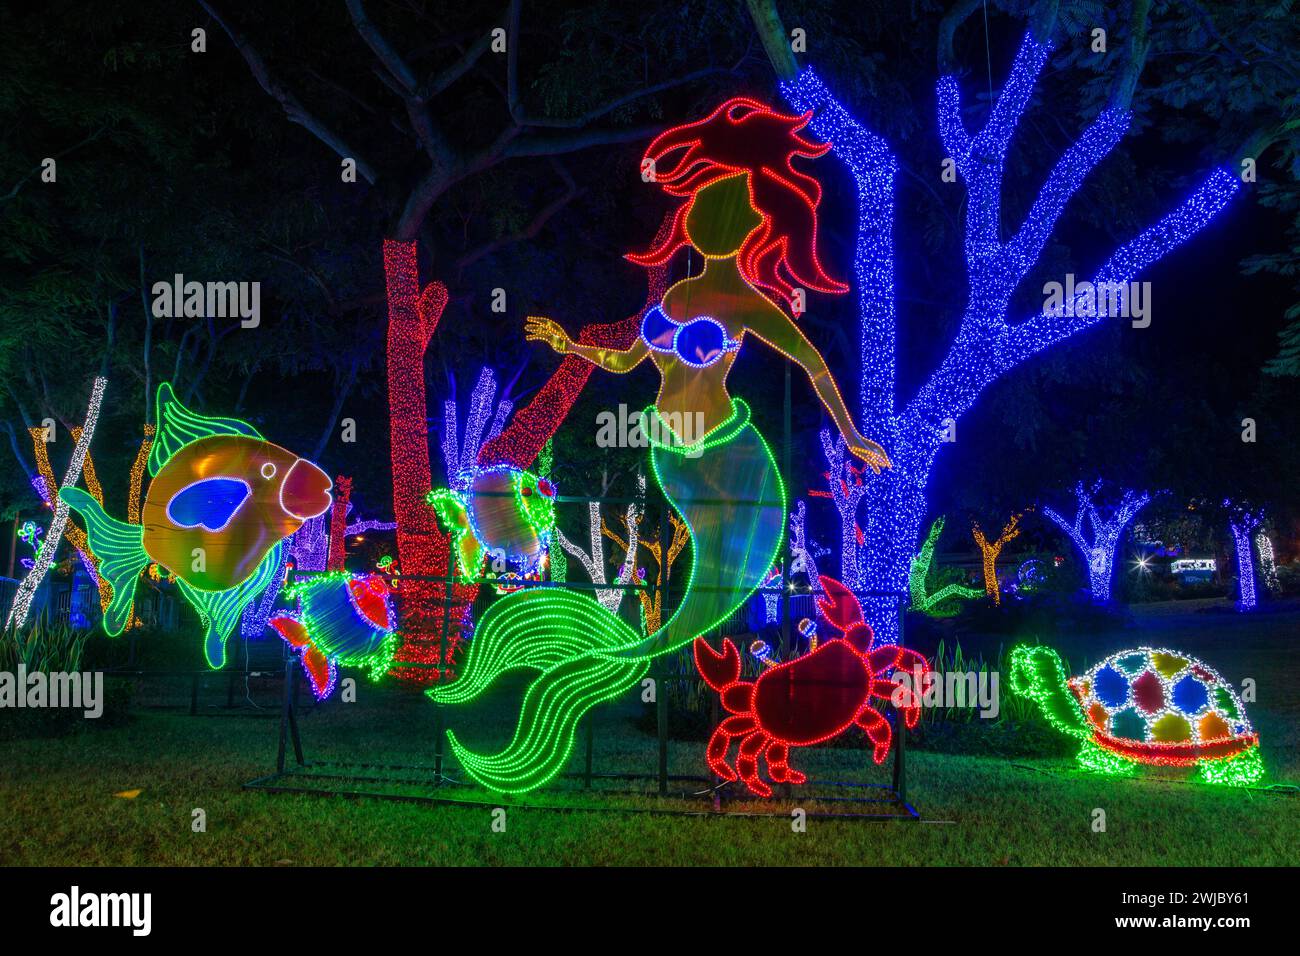 Des millions de lumières de Noël décorent le parc ibéro-américain de Saint-Domingue, en République dominicaine. Banque D'Images